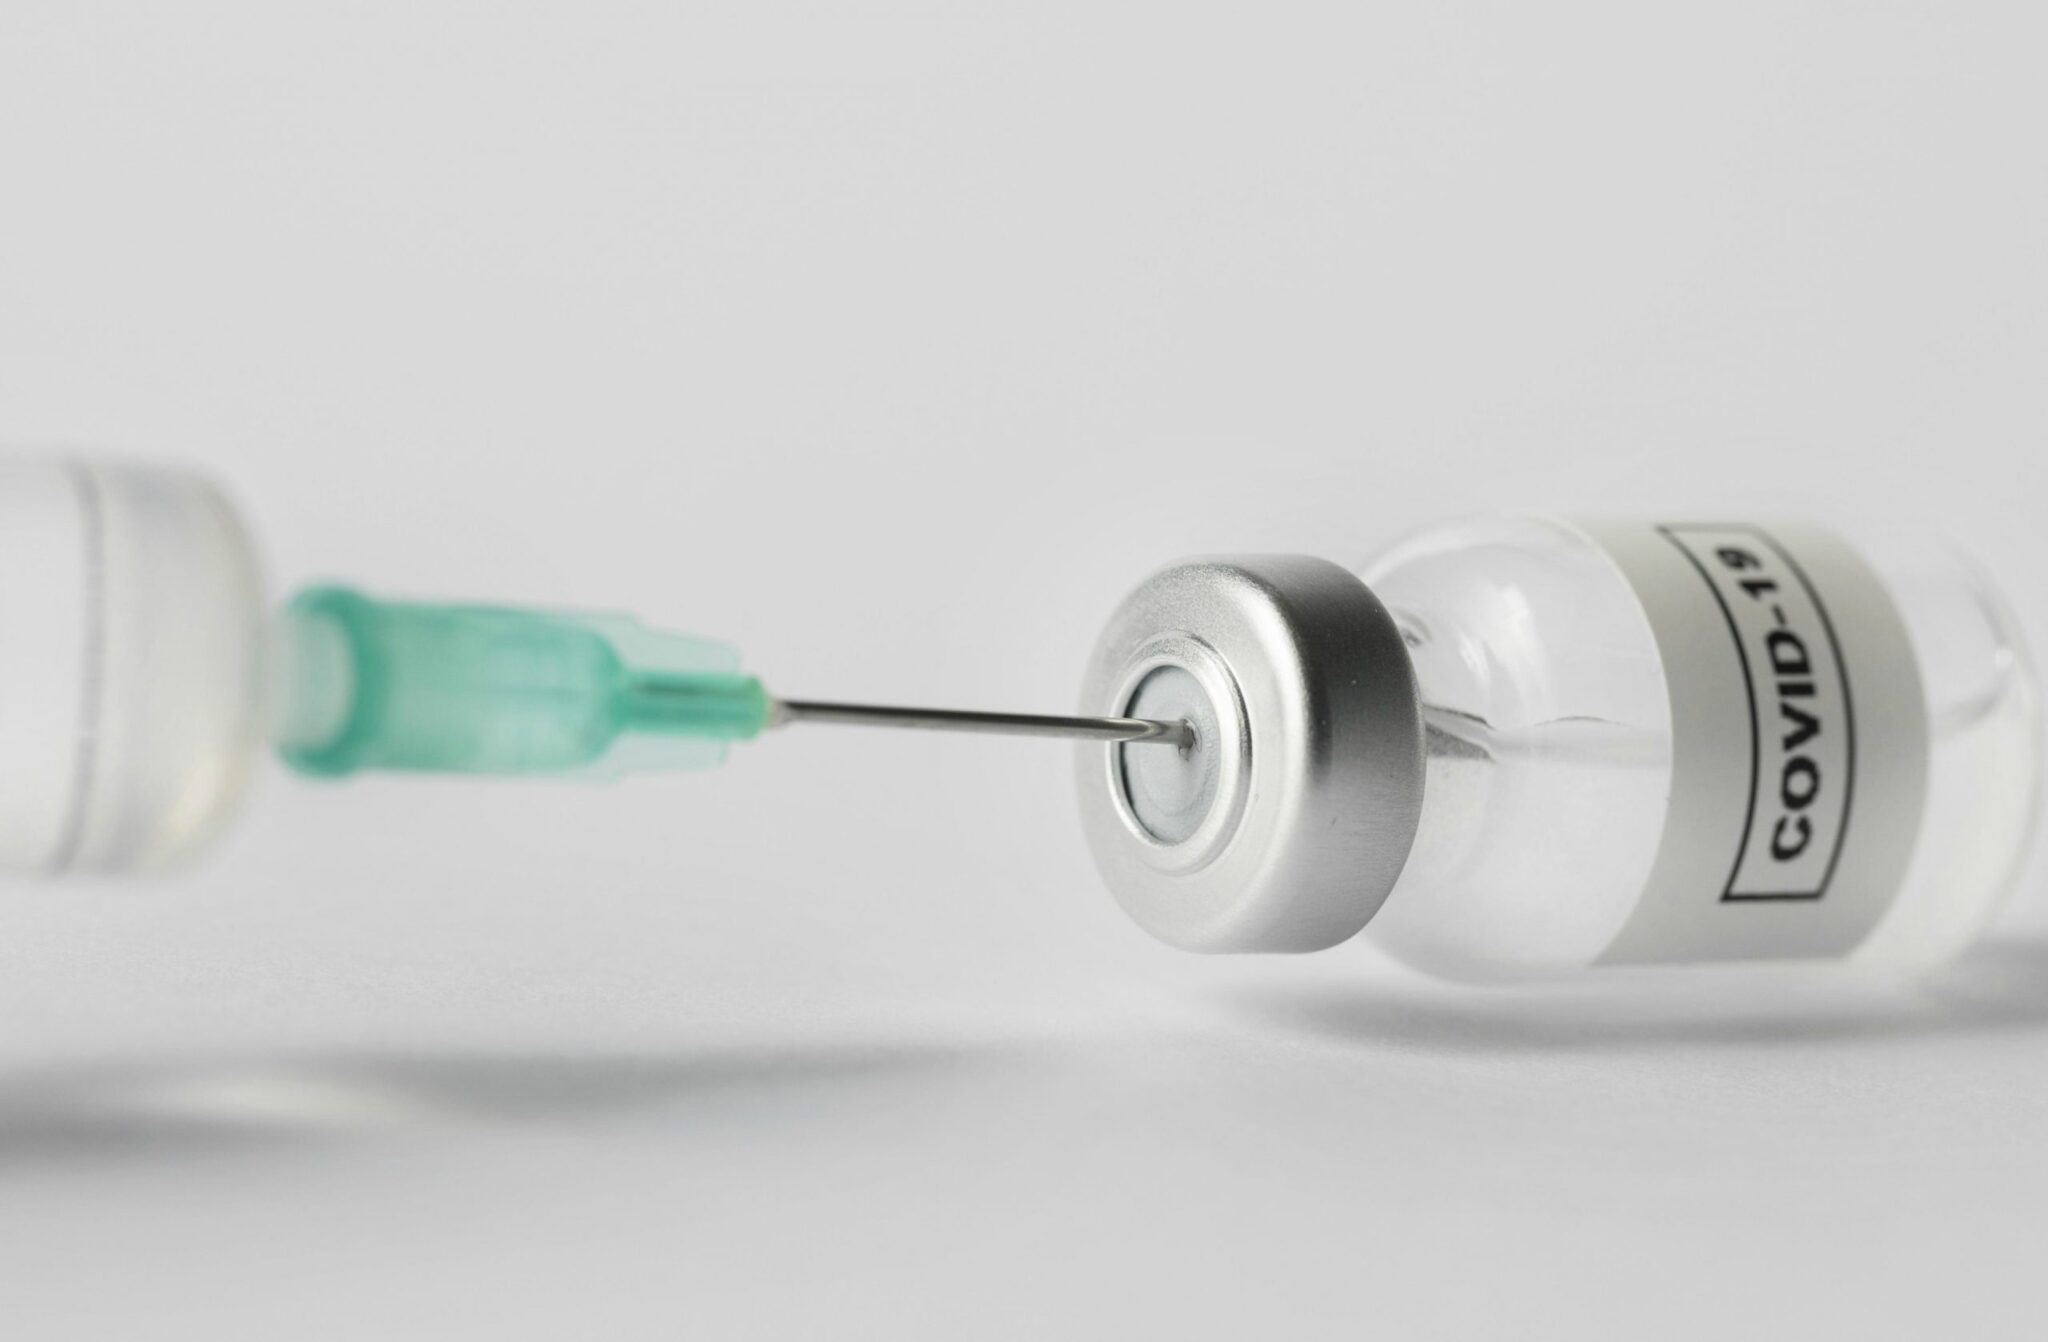 Moderna anuncia vacina mais potente contra variante ômicron da Covid-19